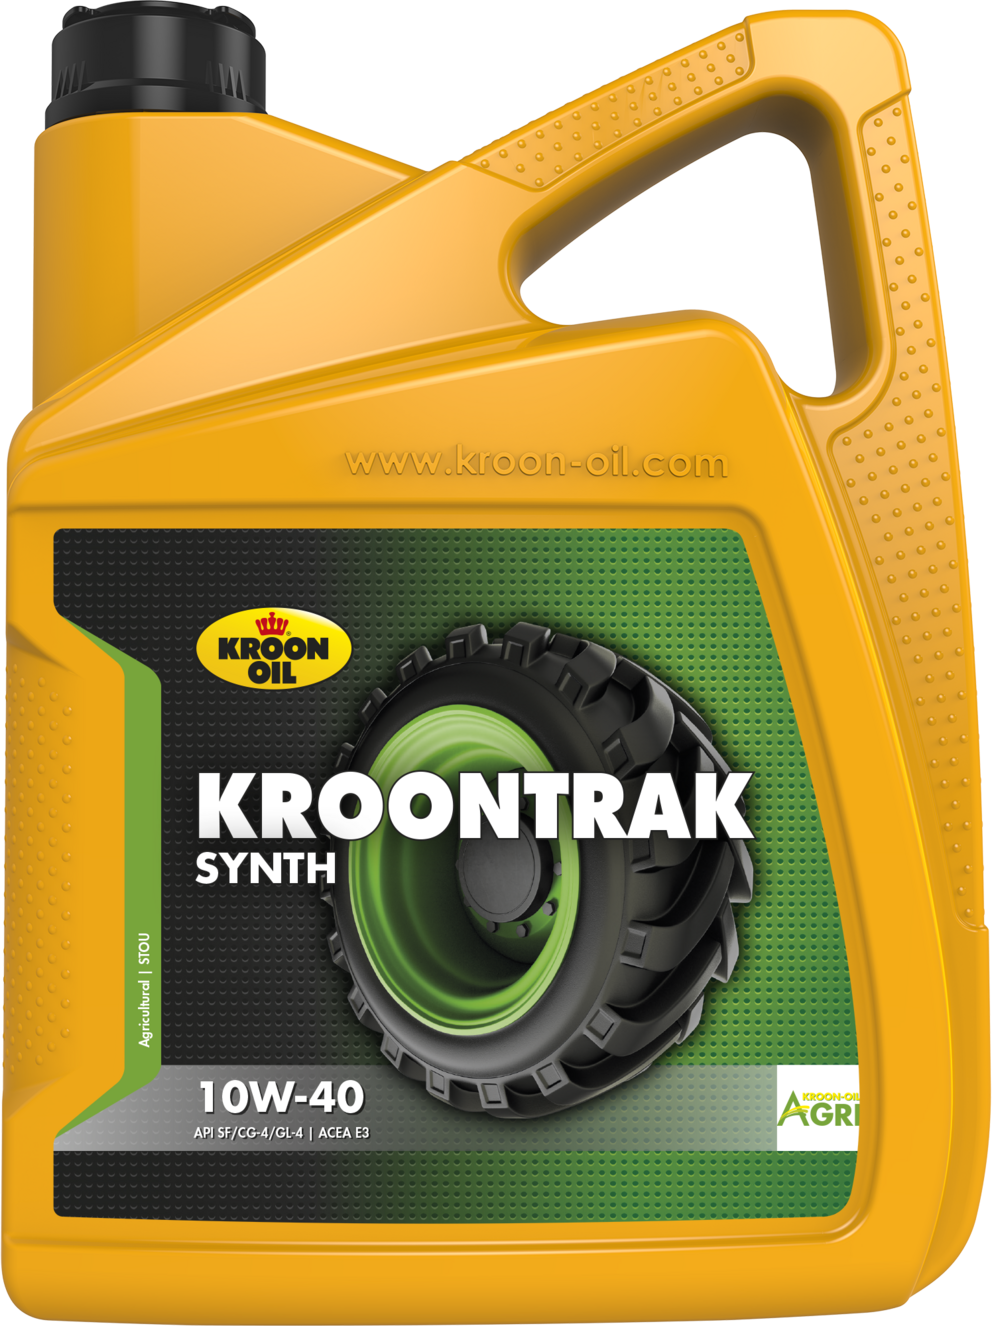 OUT-33712-5 Kroontrak Synth 10W-40 is een moderne multifunctionele olie voor landbouw- en grondverzetmachines.